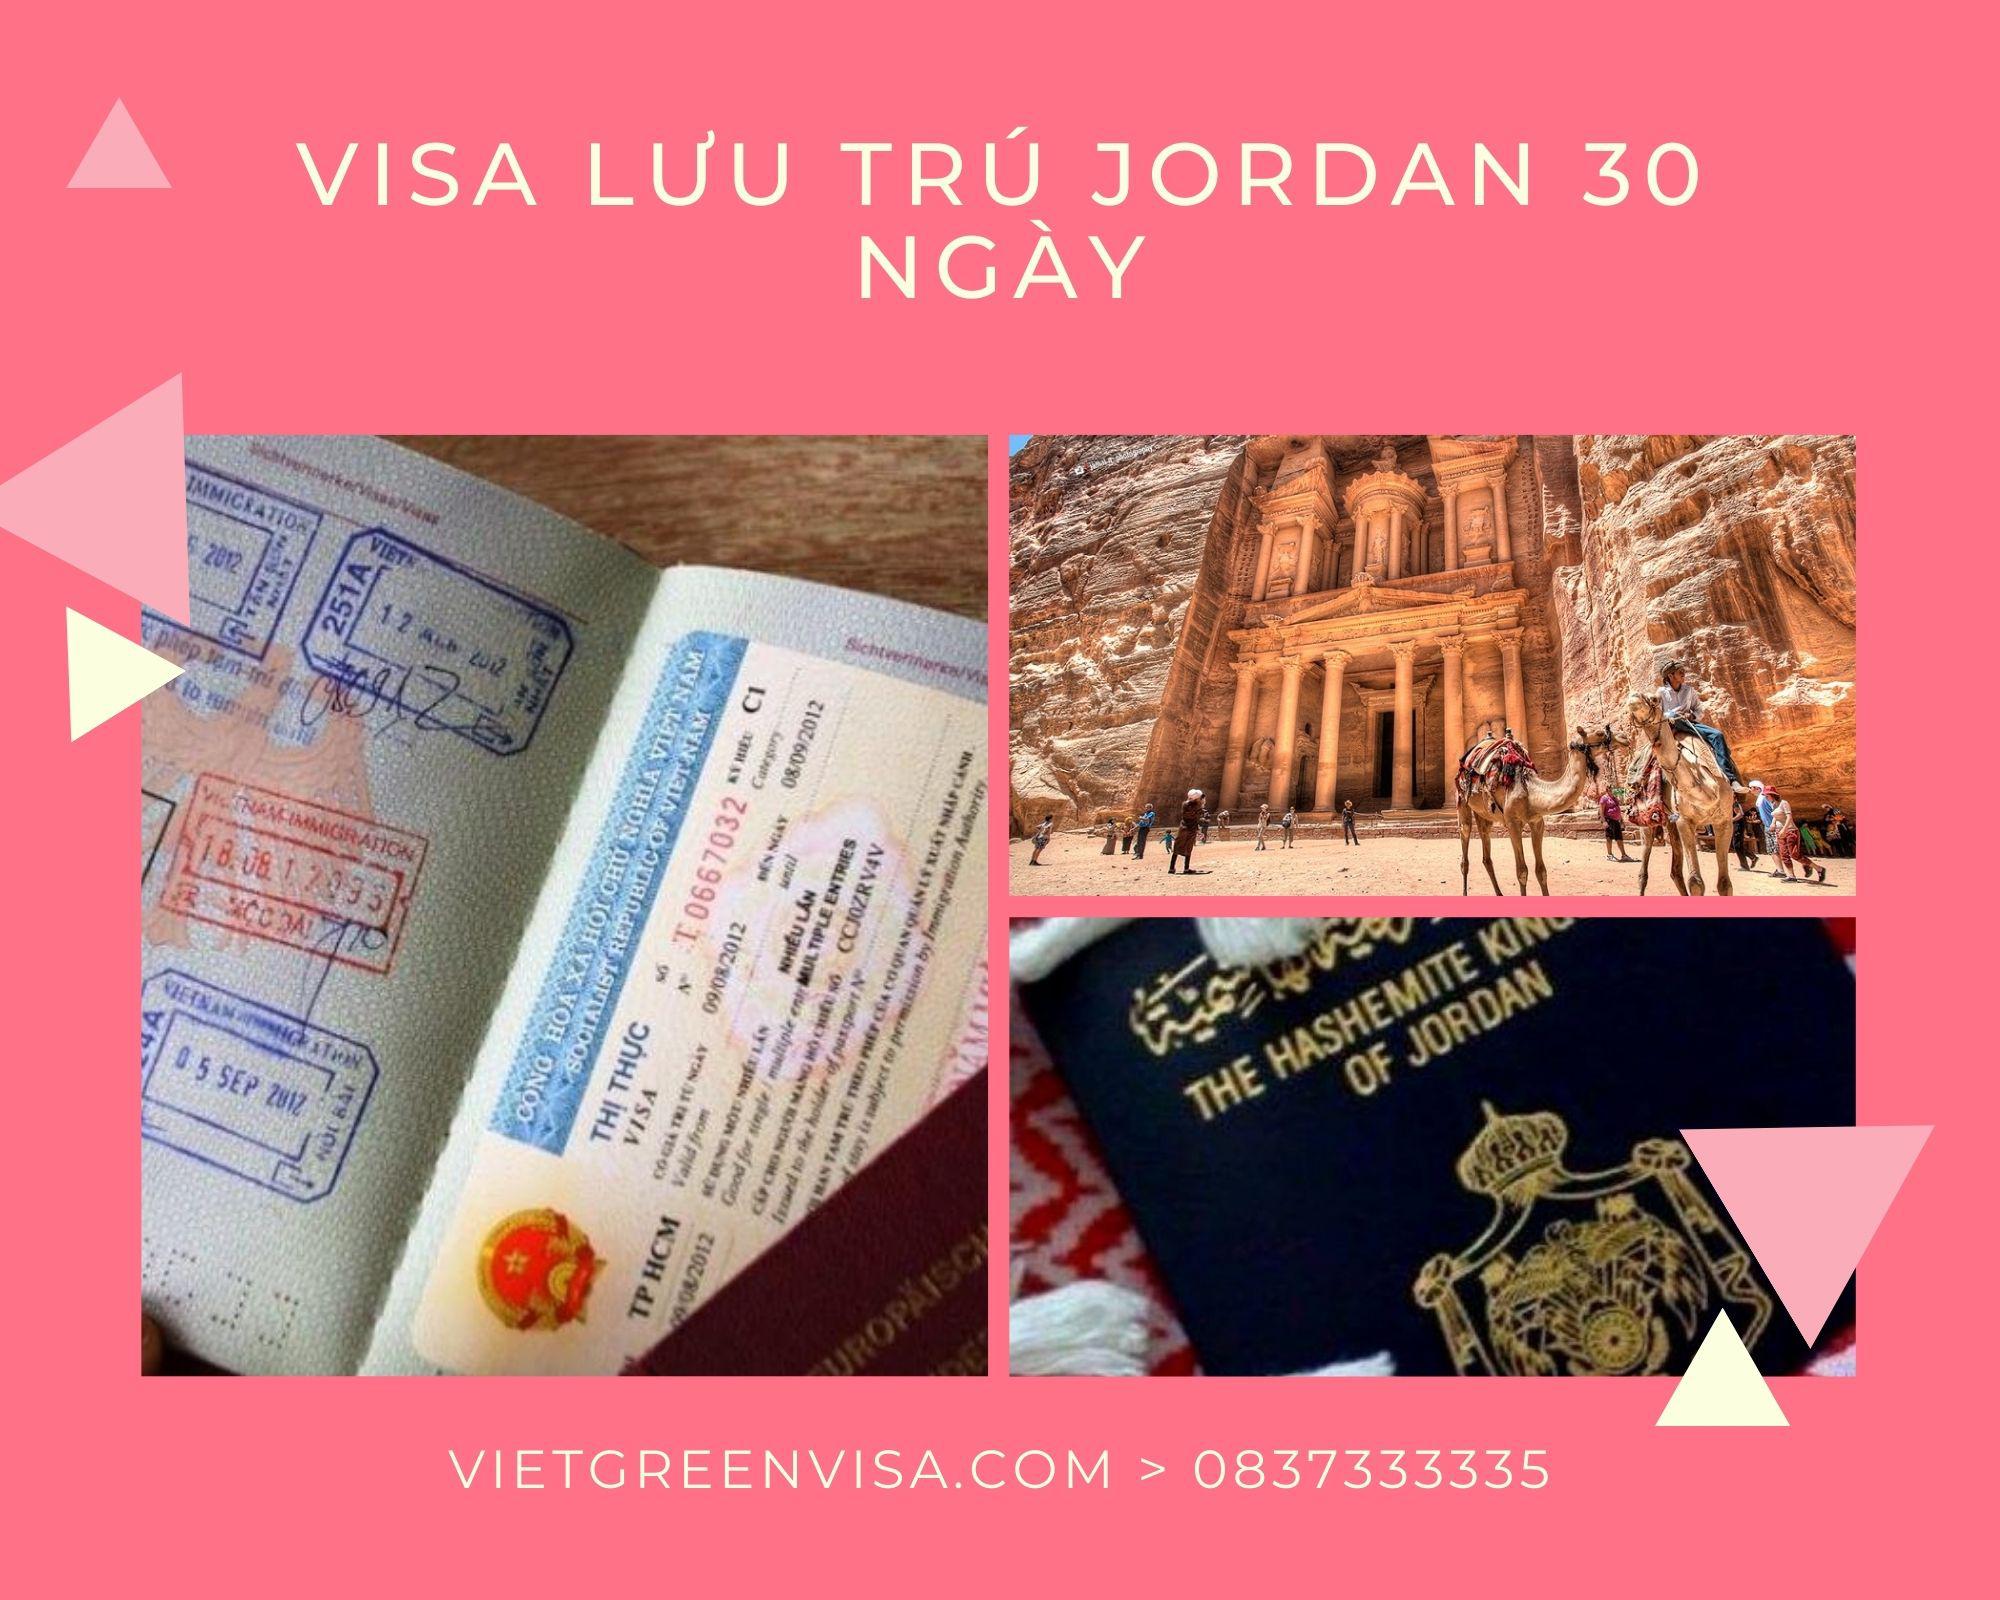 Dịch  vụ visa Jordan lưu trú 30 ngày tại Hà Nội, Hồ Chí Minh